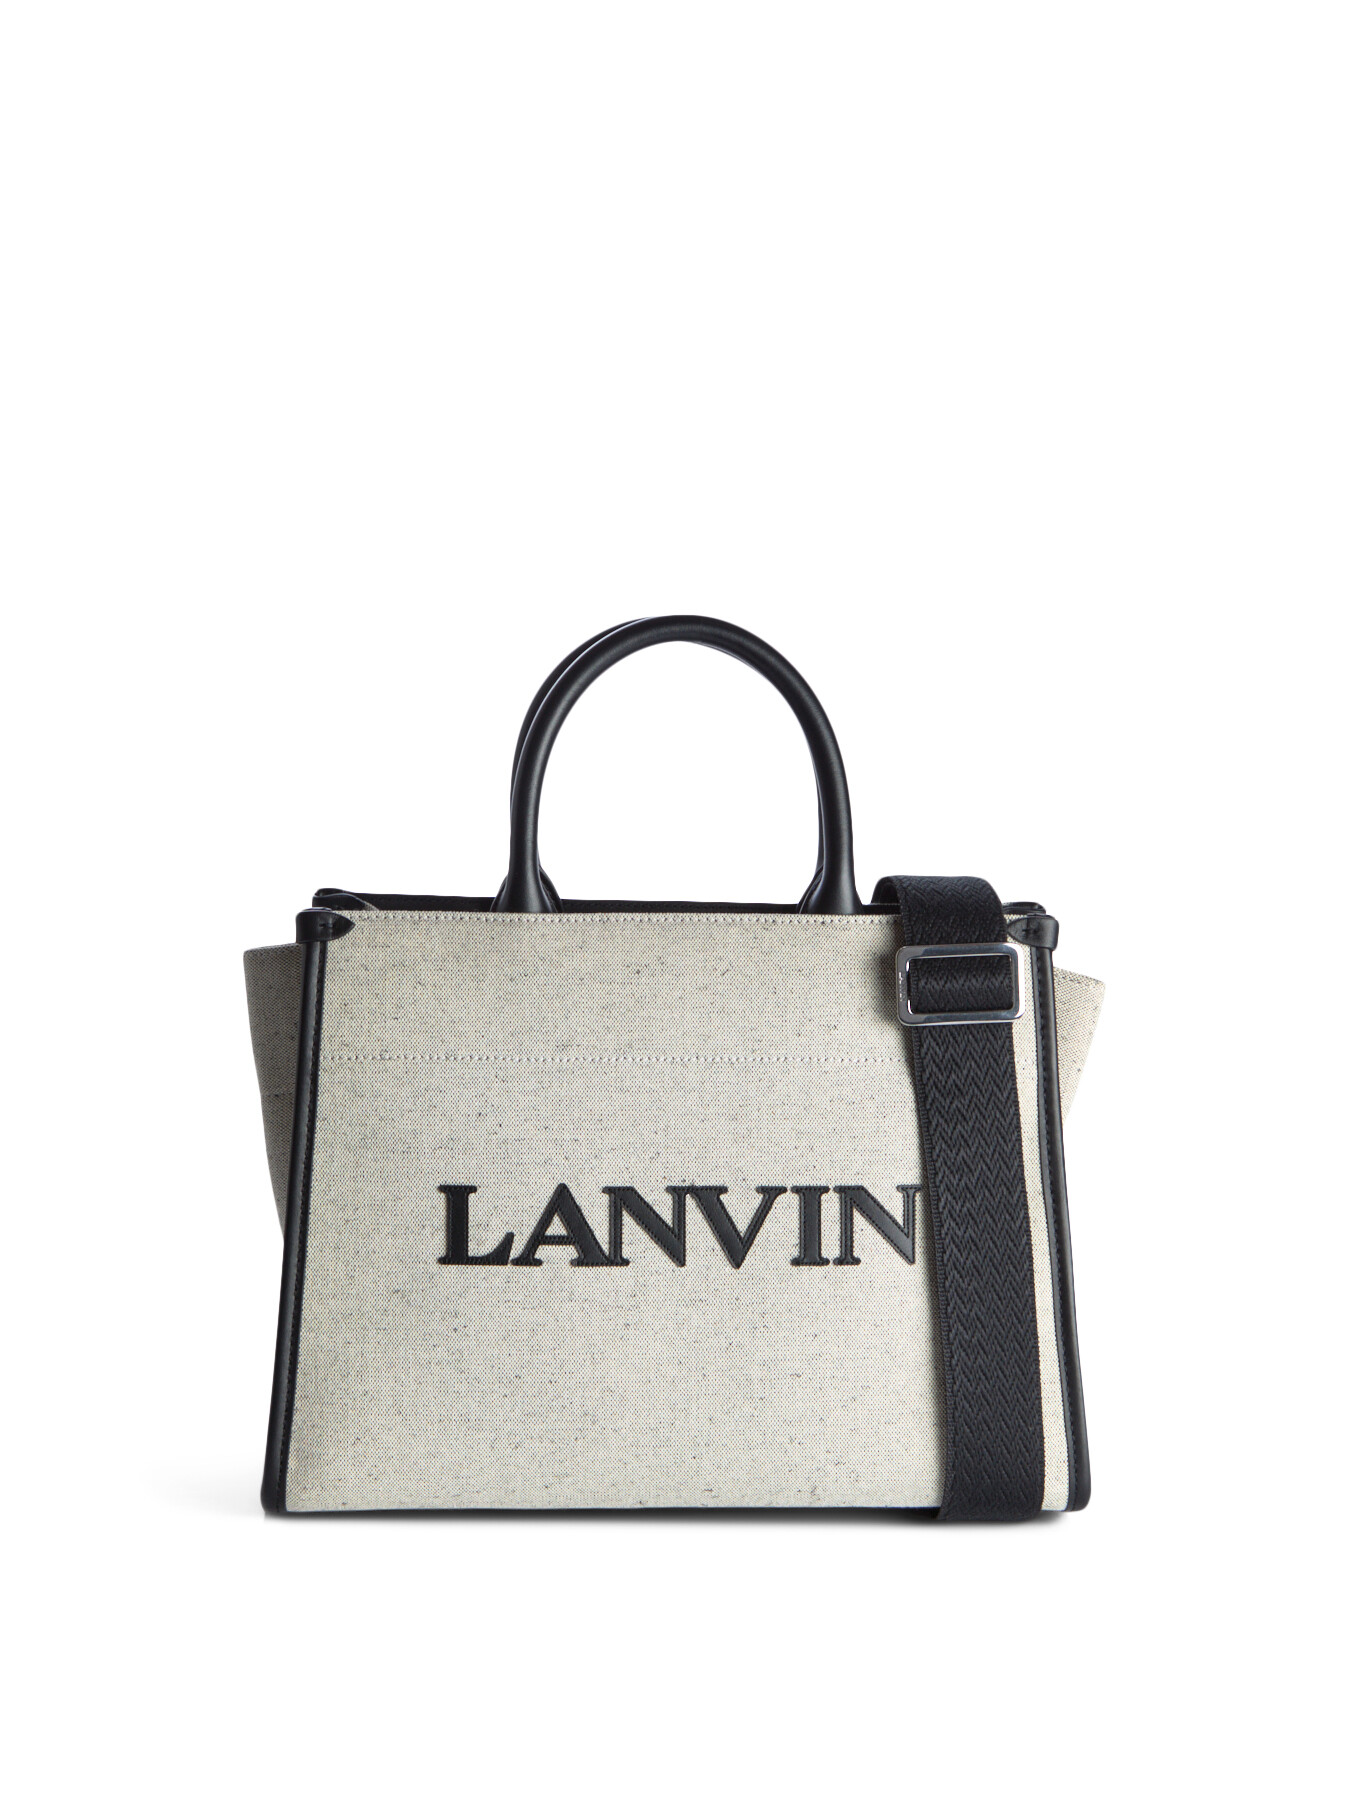 Lanvin Women's Tote Bag Pm Multi In Grey